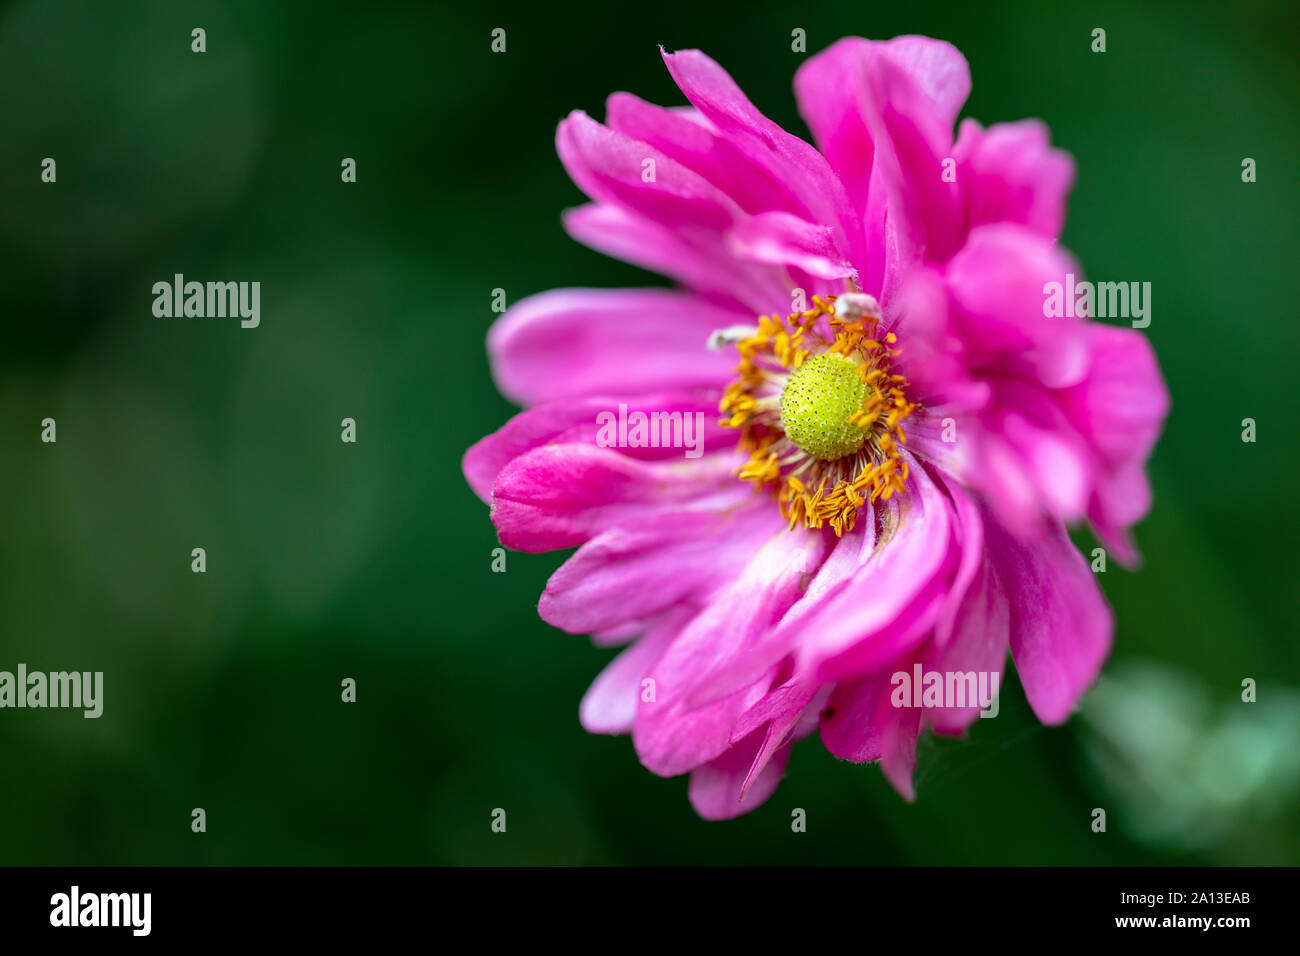 Nahaufnahme der zarten rosa Blume mit multi-layer Blütenblätter (flache Tiefenschärfe) - North Carolina Arboretum, Asheville, North Carolina, USA Stockfoto